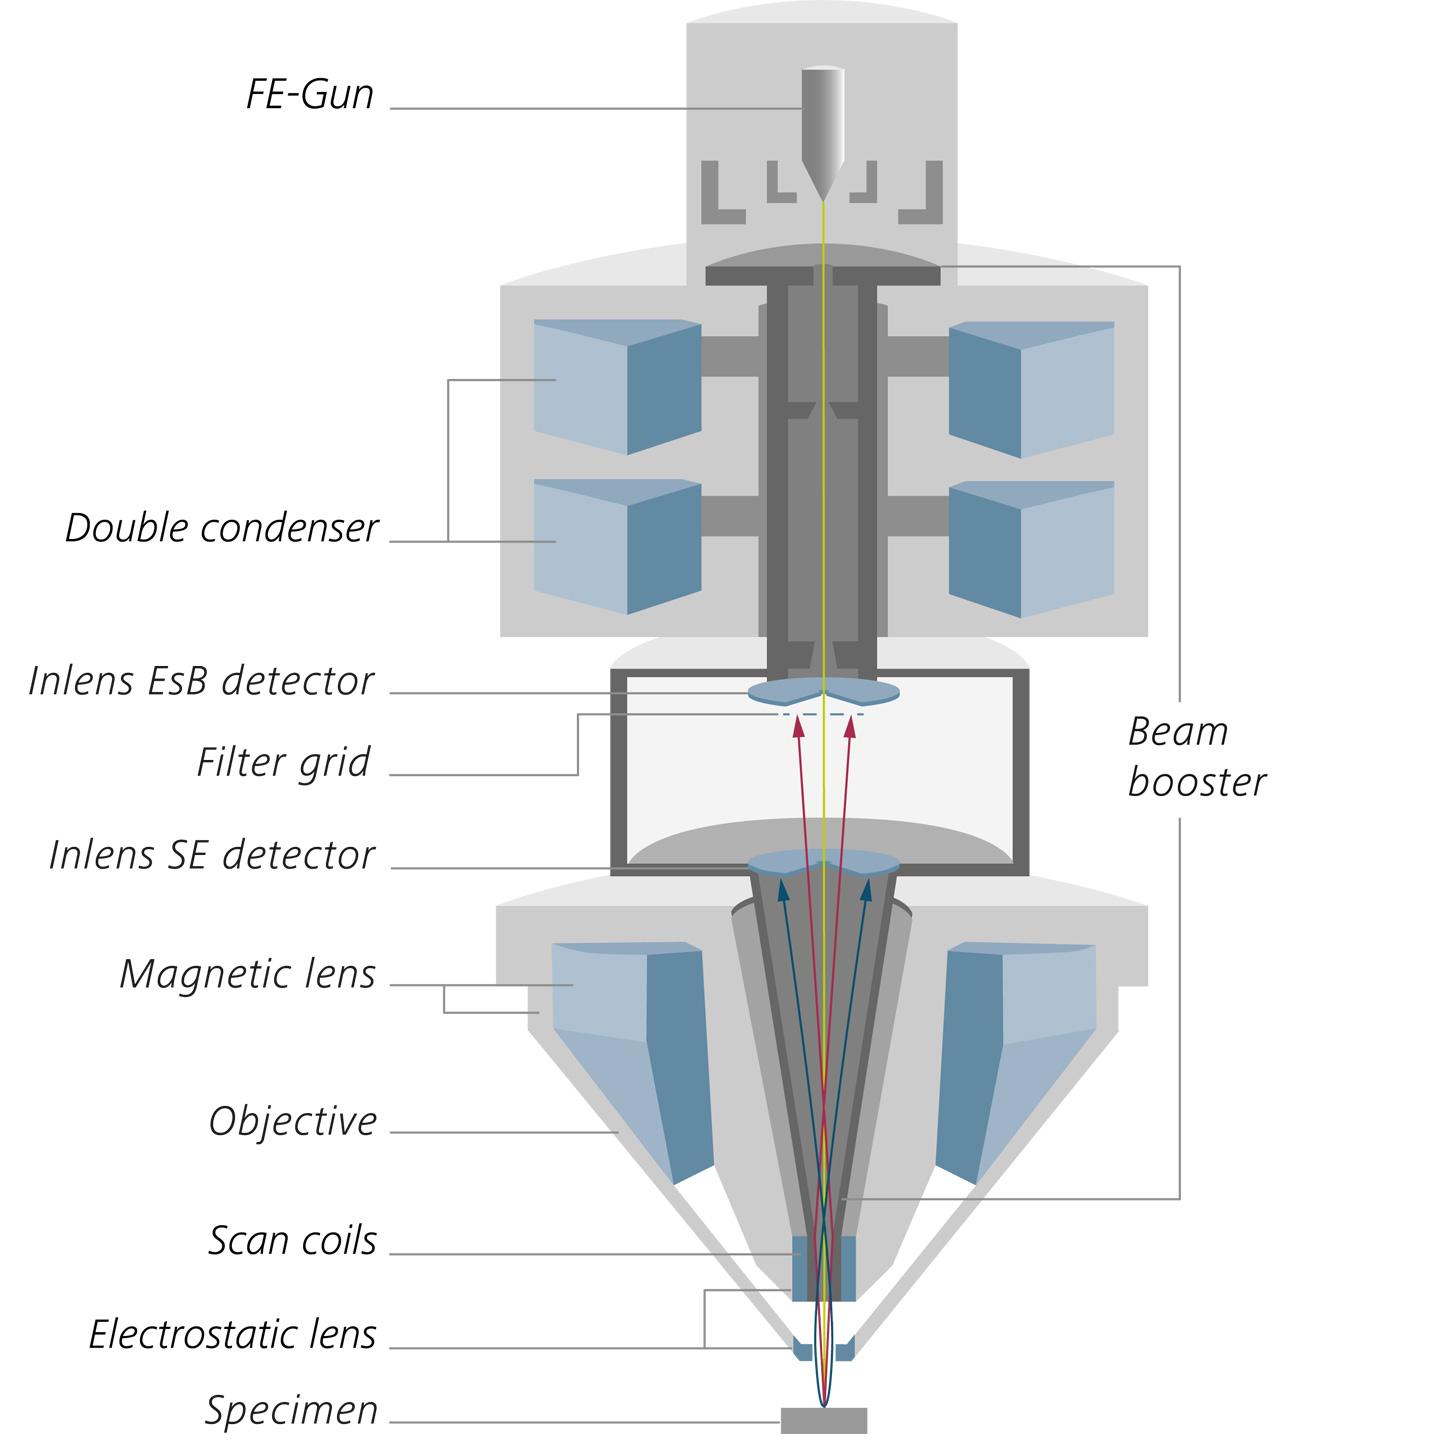 Technologie Gemini. Coupe transversale schématique de la colonne optique Gemini 2 avec double condenseur, accélérateur de faisceau, détecteurs Inlens et objectif Gemini.